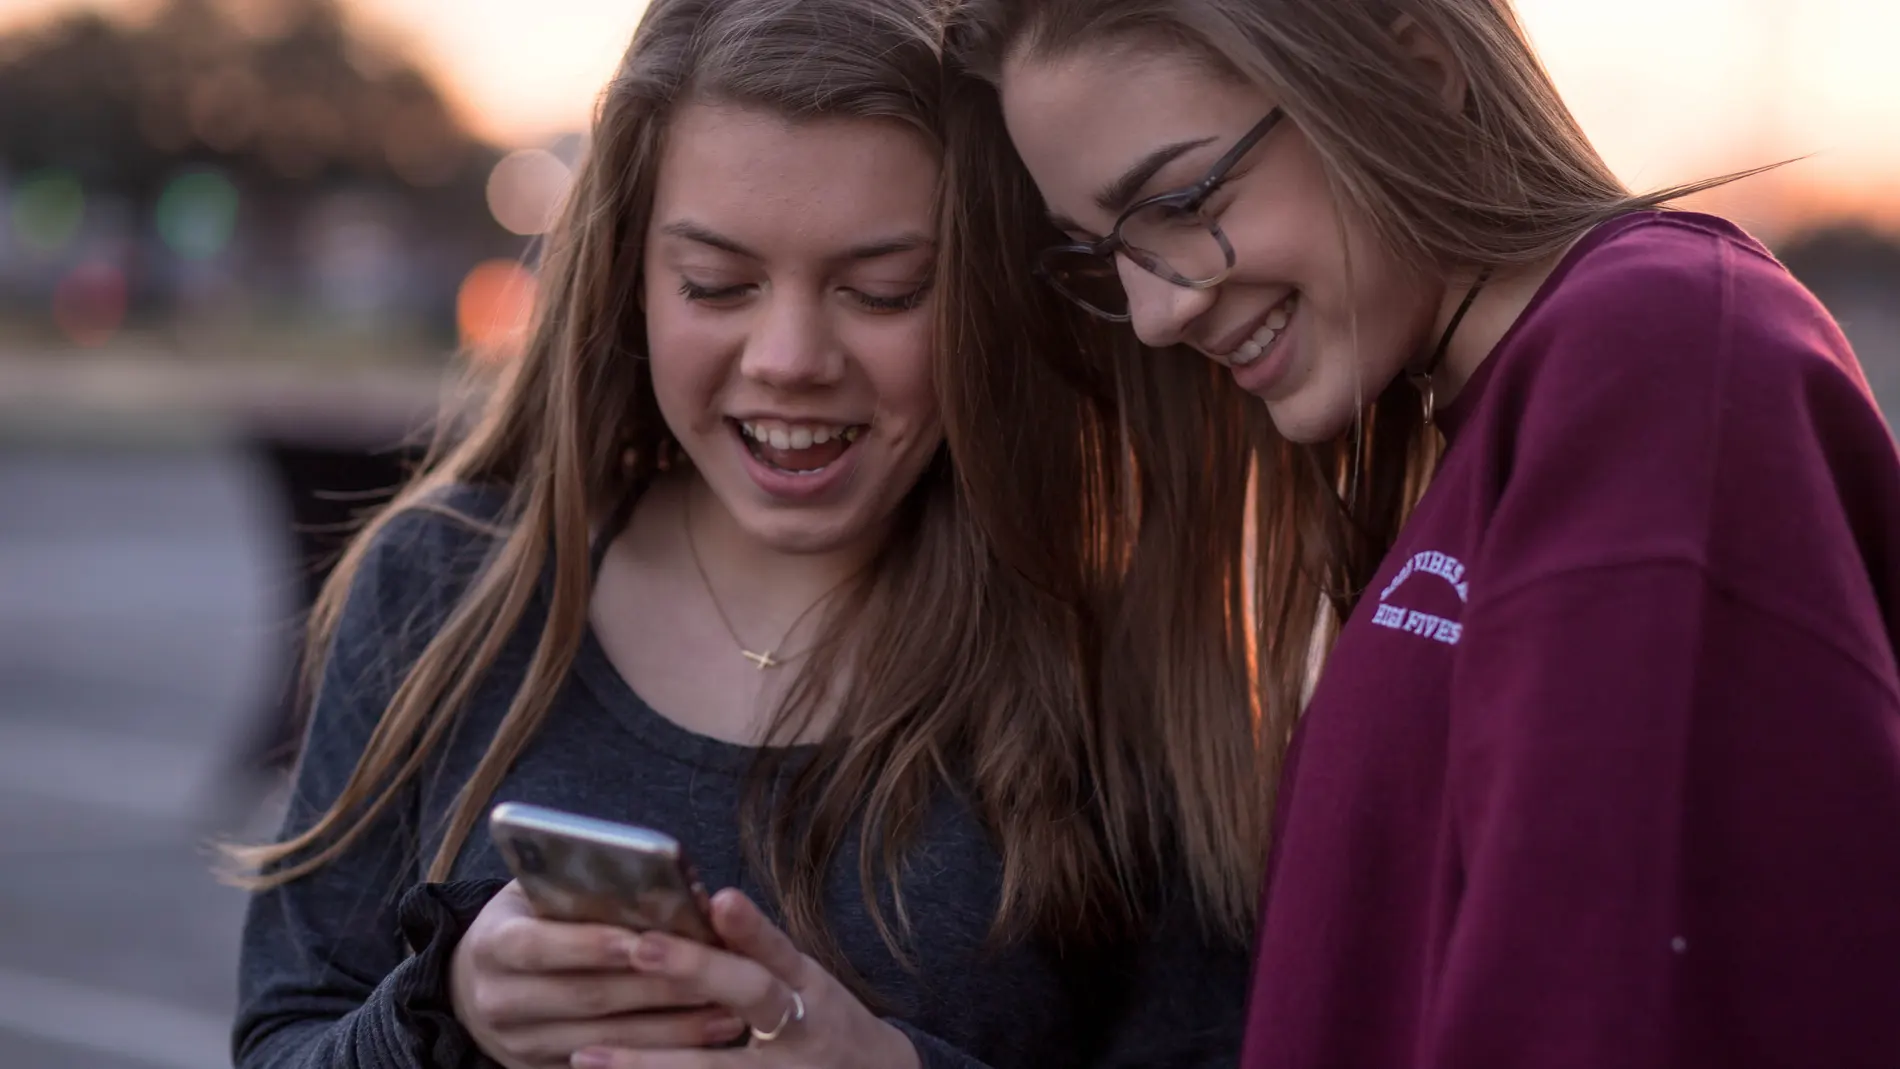 Dos chicas jóvenes, de pie con las cabezas juntas mirando el móvil de una de ellas y riéndose